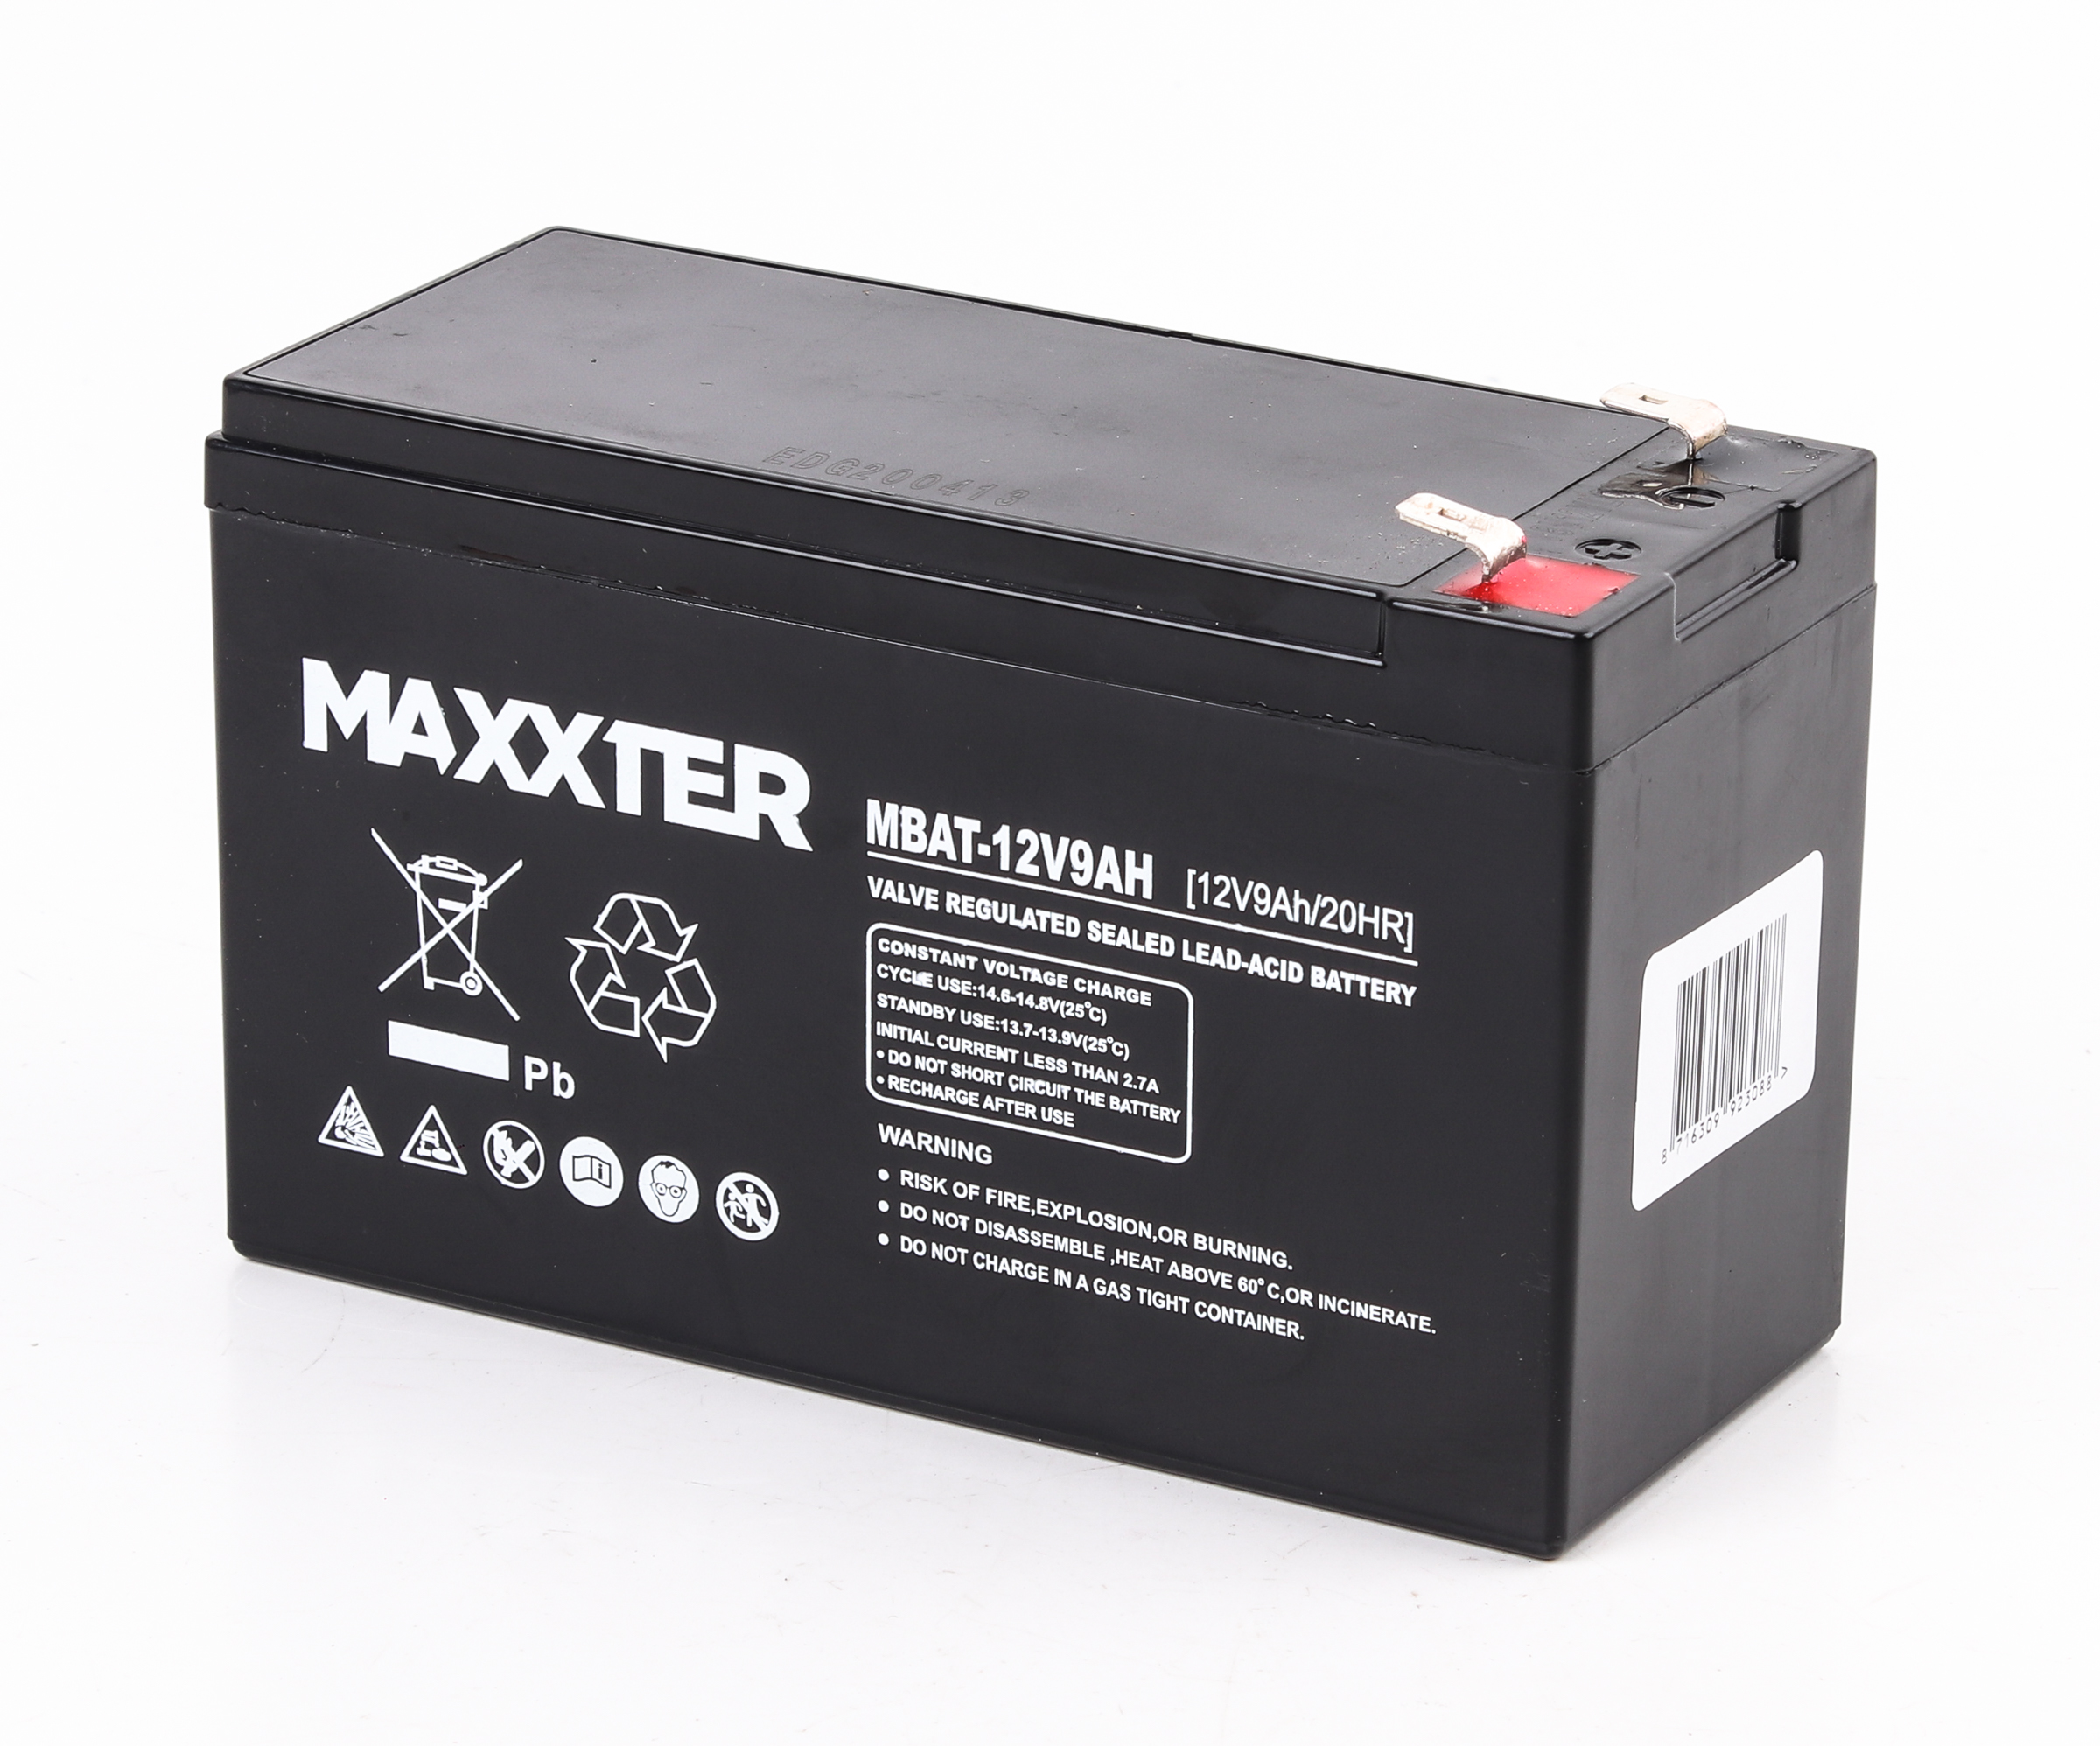 Відгуки акумулятор Maxxter MBAT-12V9AH